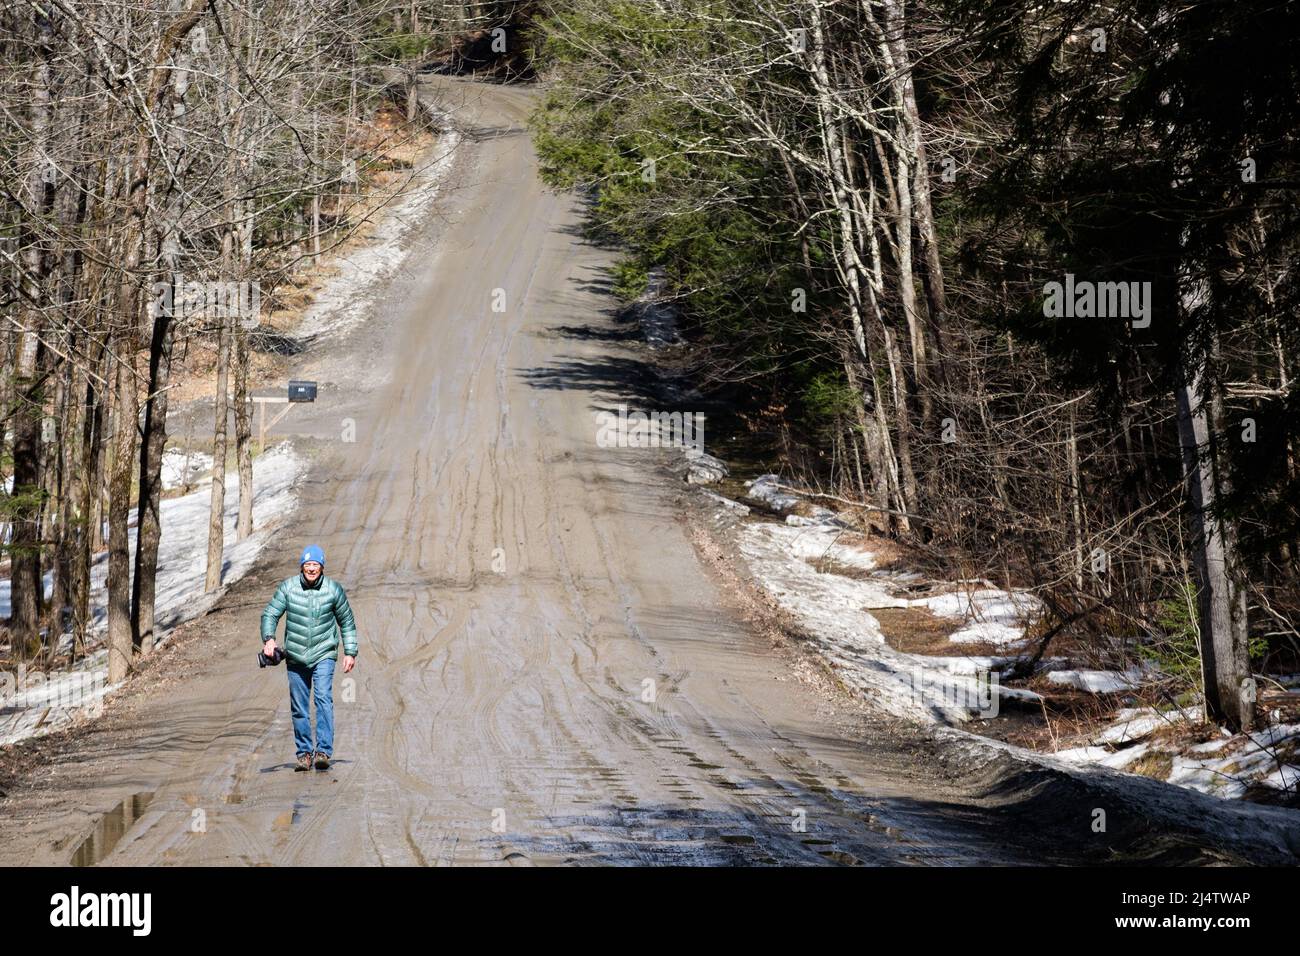 Andador solitario en la temporada de barro, el descenso de los caminos de tierra de Vermont en pantanos de barro, sucede cada primavera, normalmente en marzo y abril. Estado de Vermont, EE.UU. Foto de stock